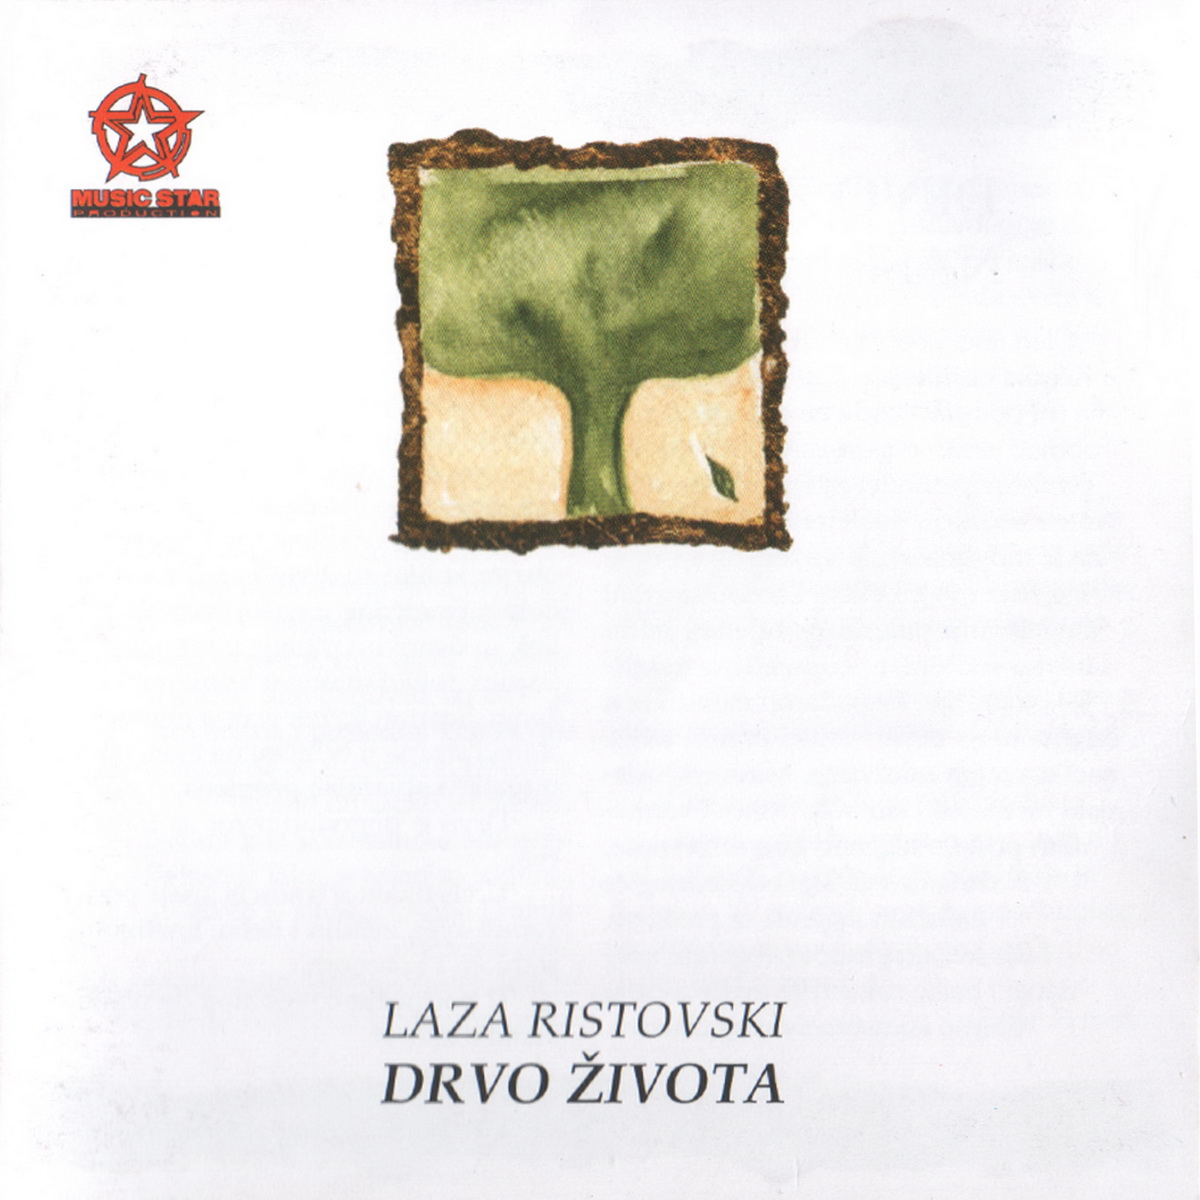 Laza Ristovski 2008 Drvo zivota A